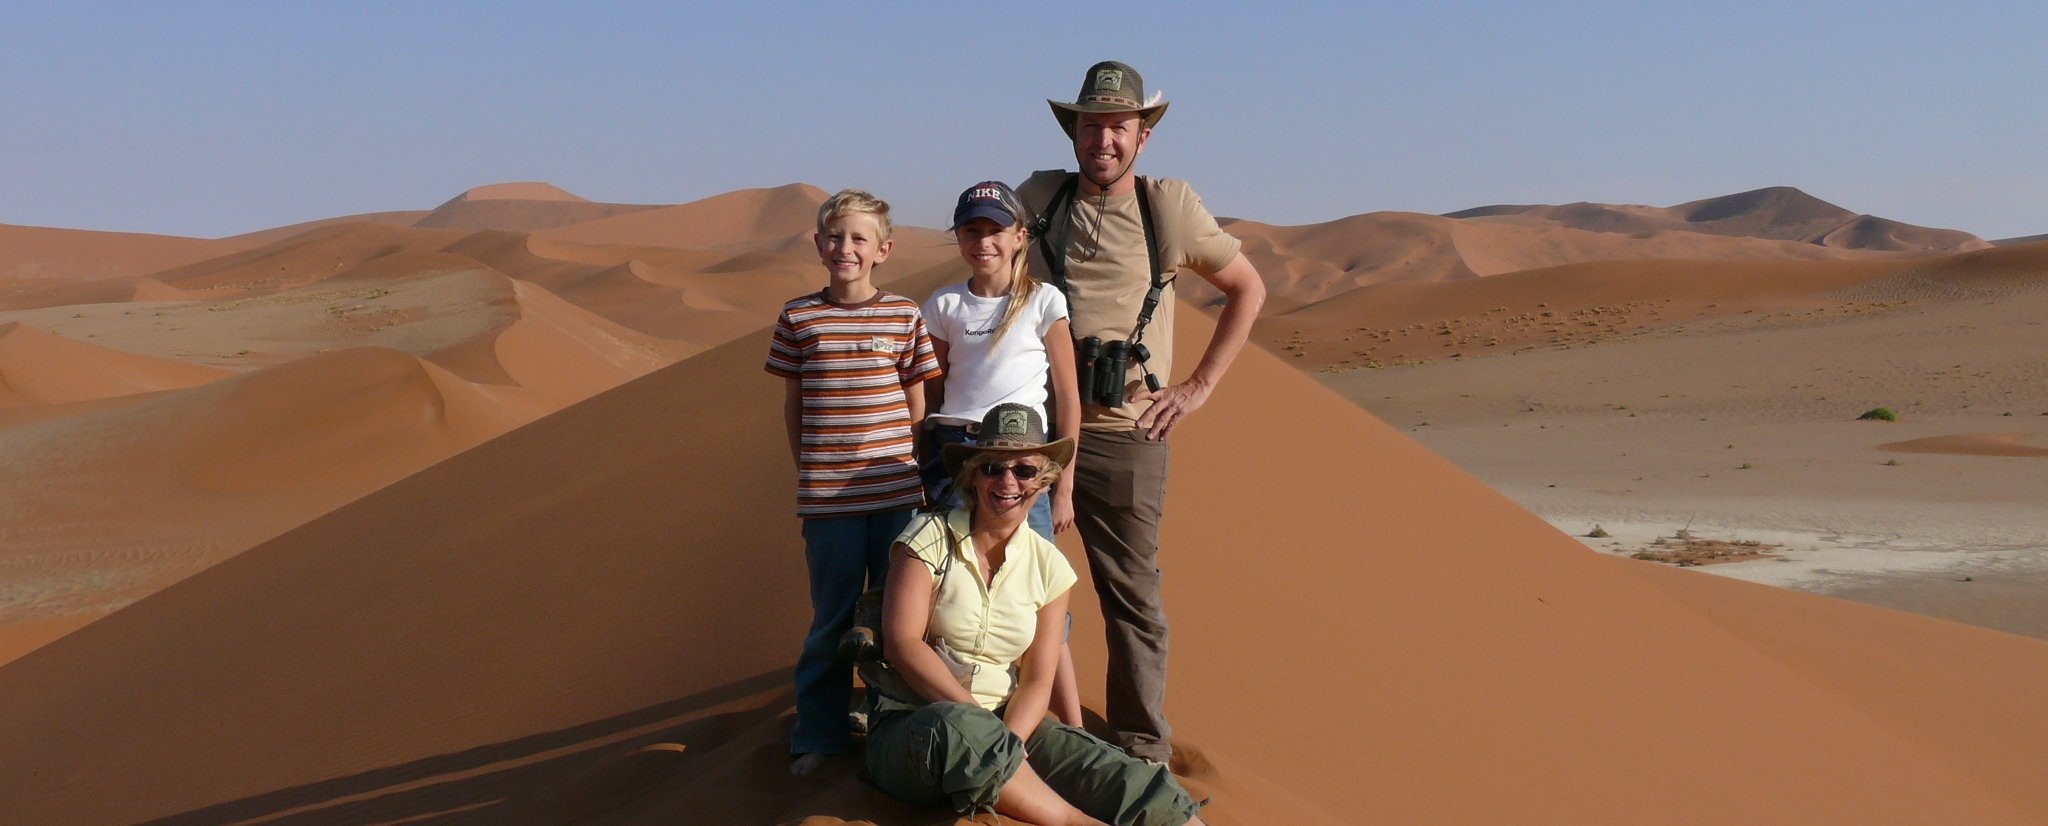 Familienreise_Reisen mit Kindern_Namibia